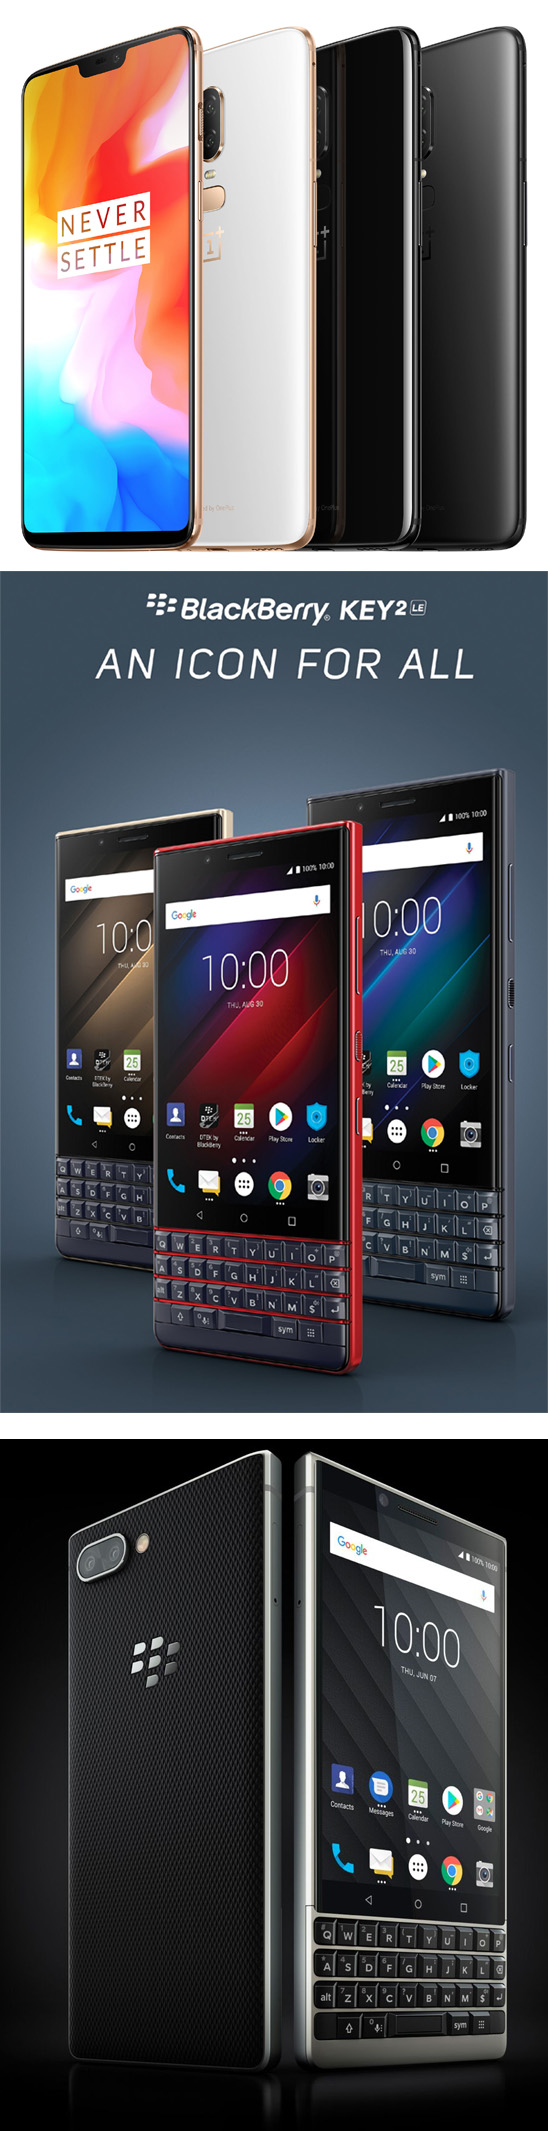 Le OnePlus 6 et les Blackberry KEY2 primés aux iF Design Awards